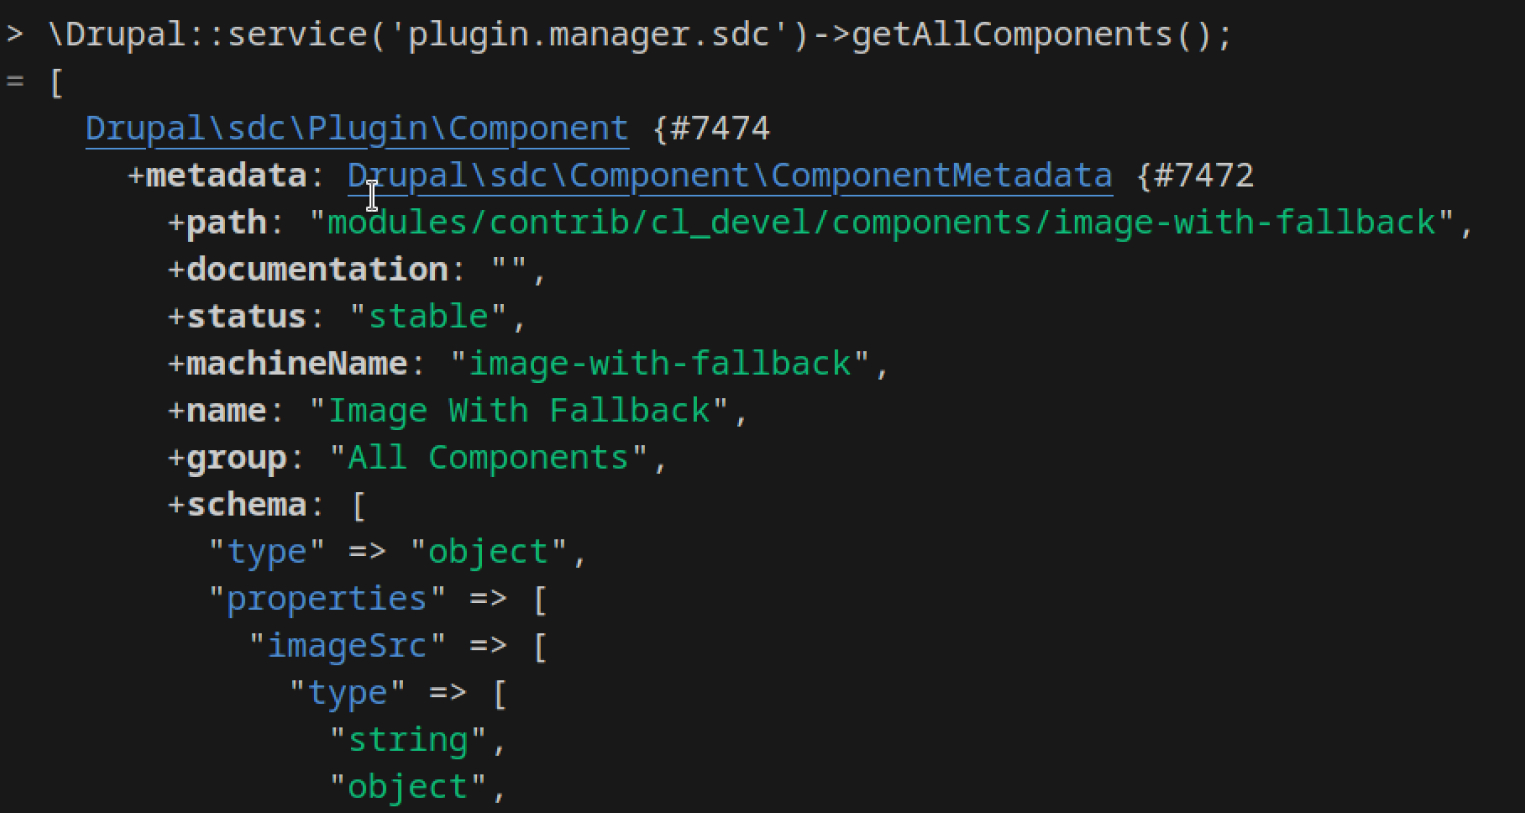 Los componentes son plugins, y pueden ser listados usando un pluginManager